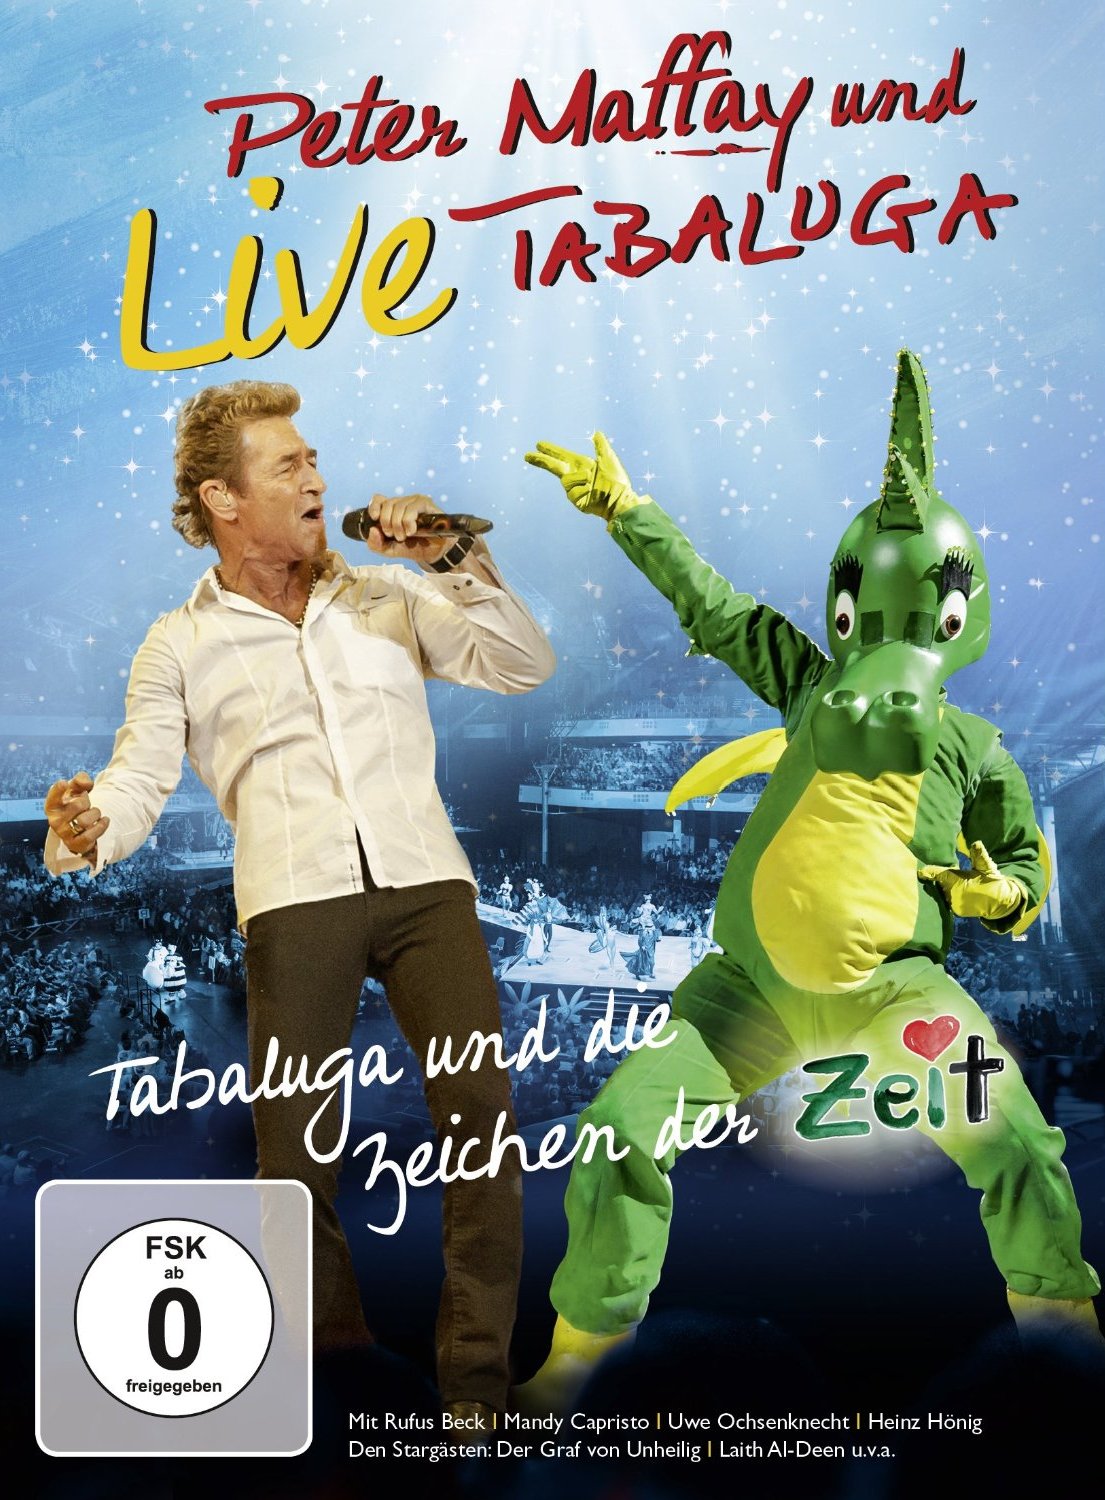 Peter Maffay und TABALUGA präsentieren das Rockmusical “Tabaluga und die Zeichen der Zeit – live” auf DVD und CD